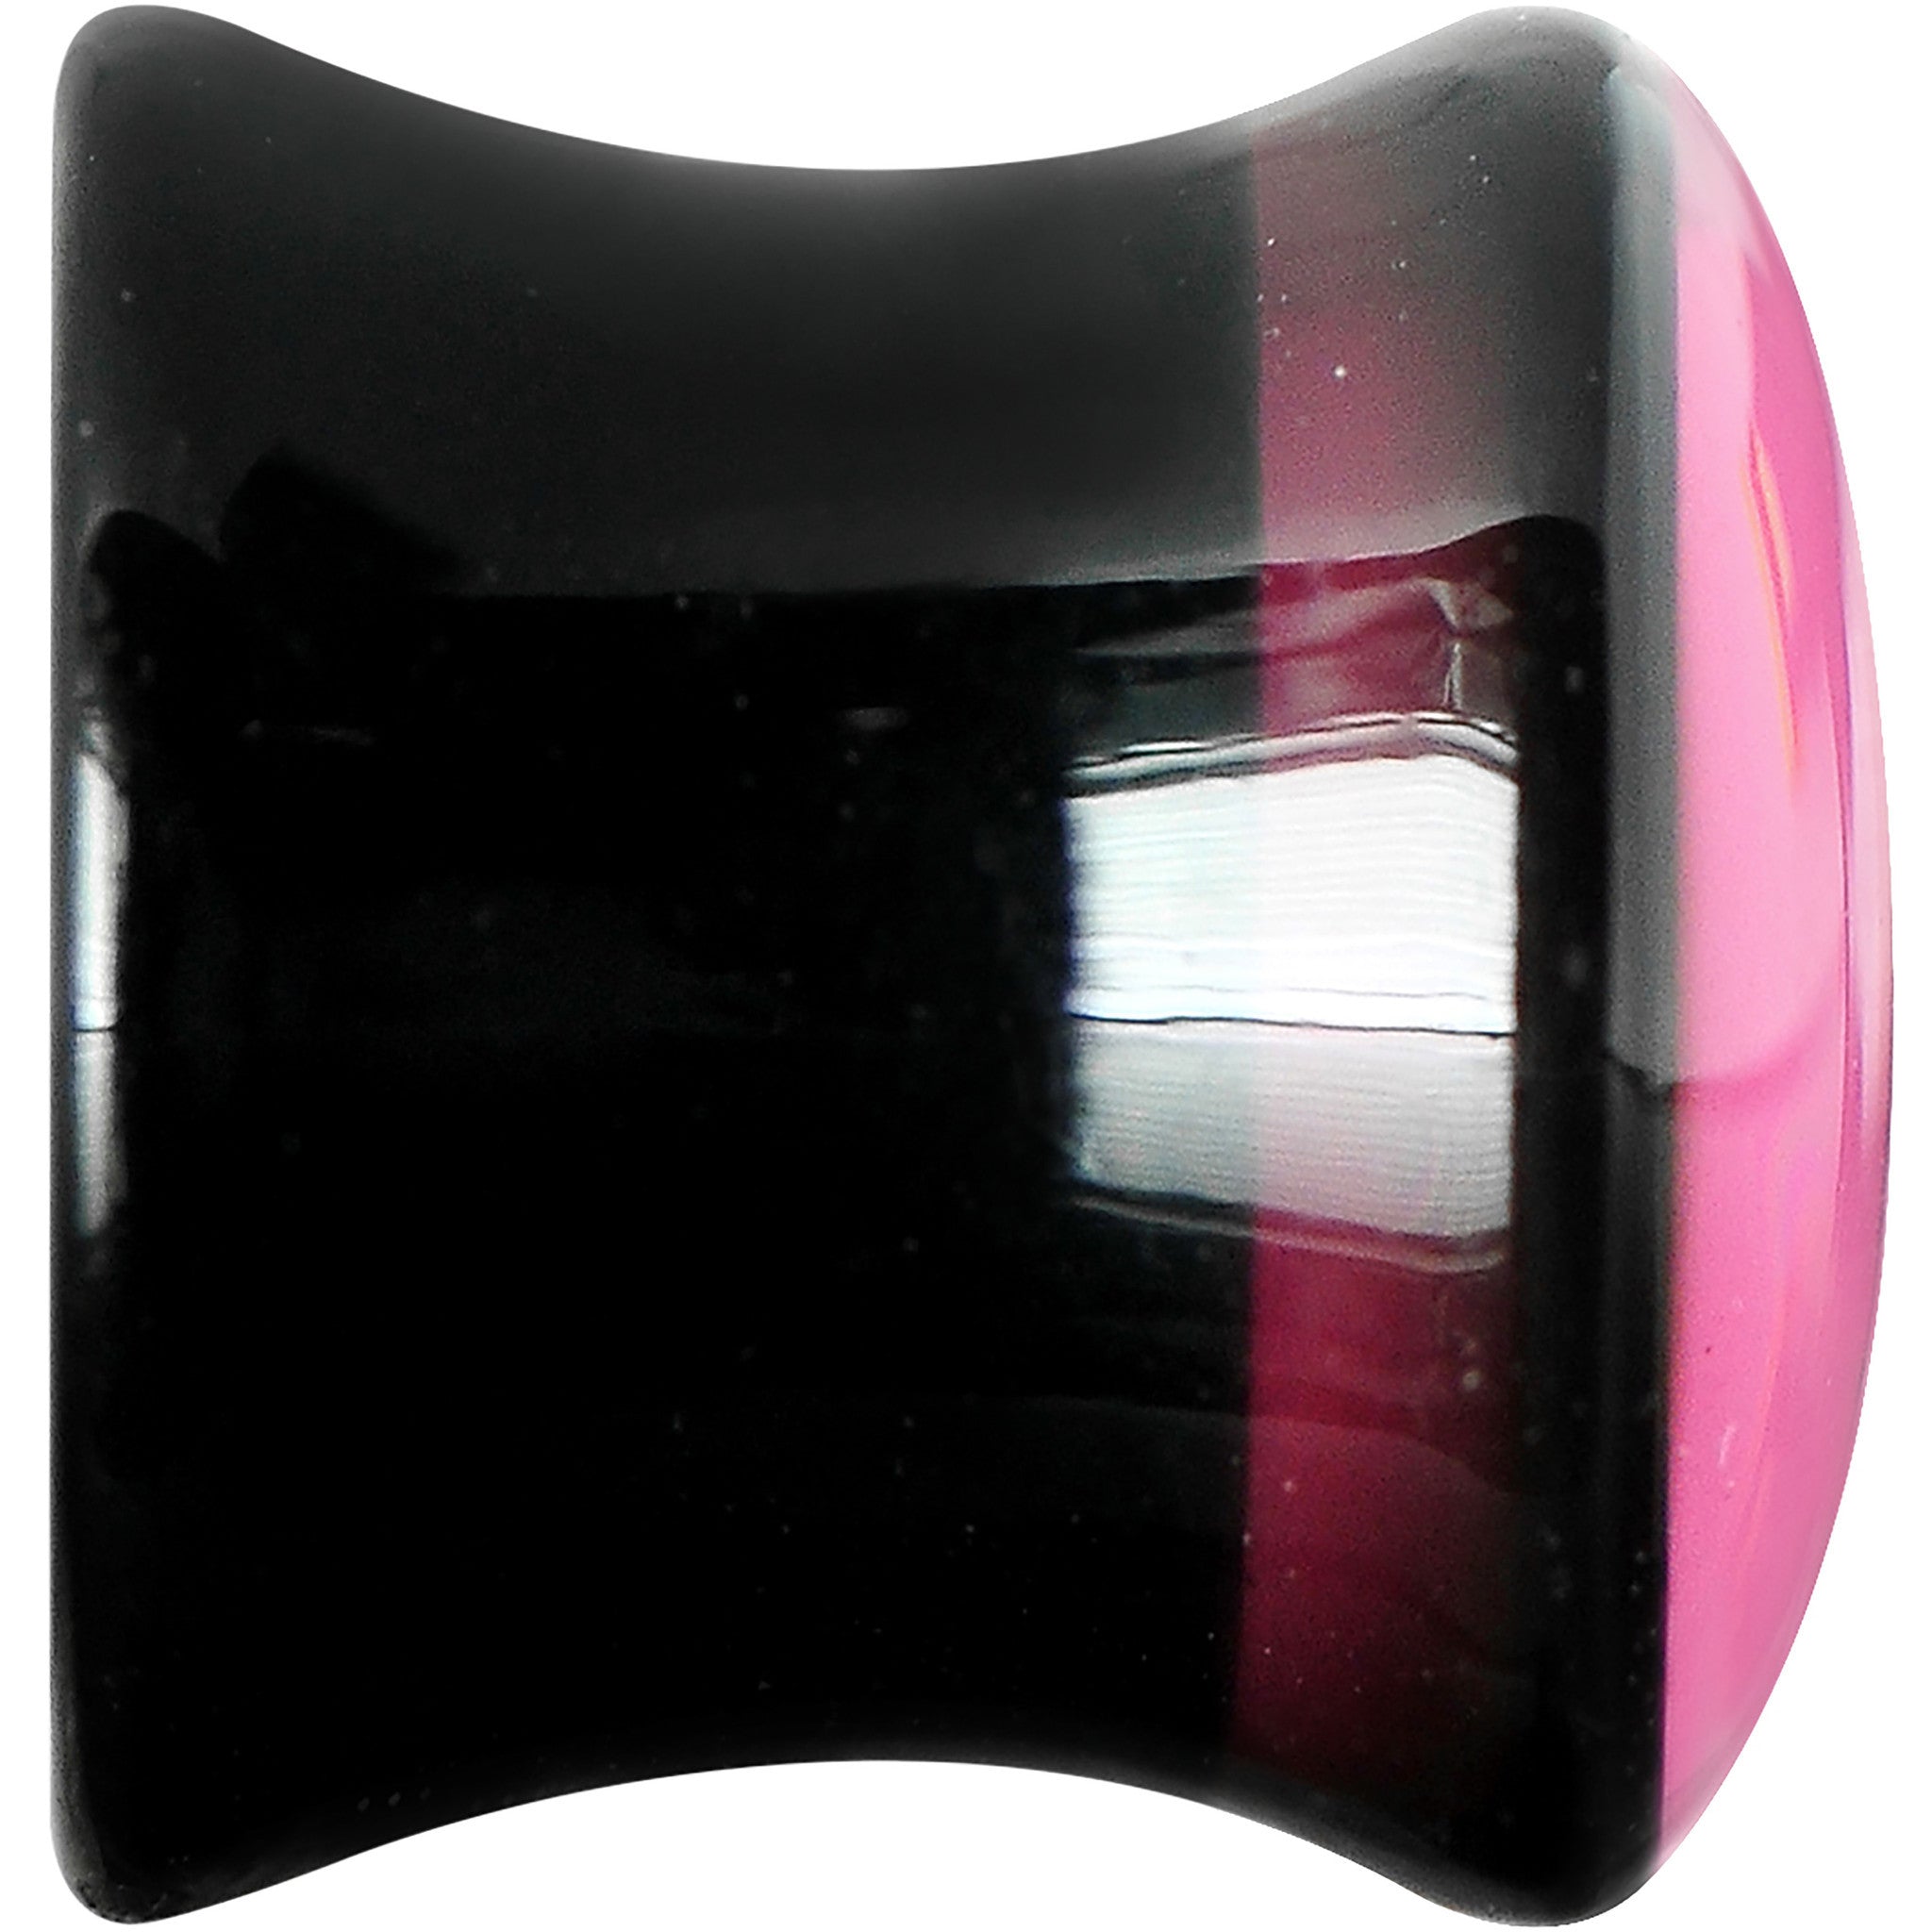 00 Gauge Black Acrylic Hot Pink Heart Saddle Plug